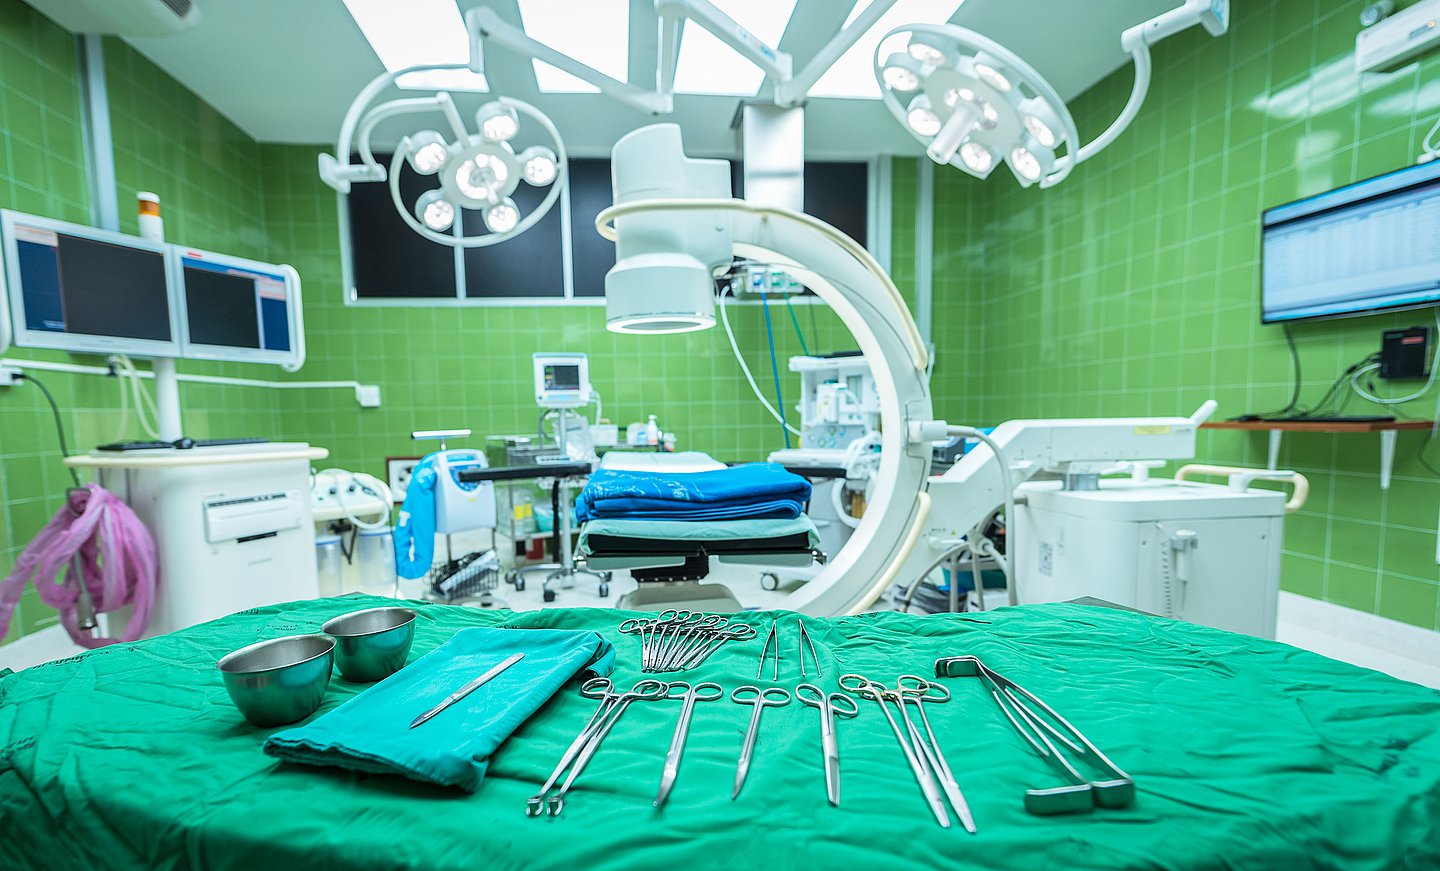 Das Foto zeigt einen OP-Raum, der für eine Operation vorbereitet ist. Im Vordergrund ist der vorbereitete Instrumententisch zu sehen, im Hintergrund der beleuchtete OP-Tisch.